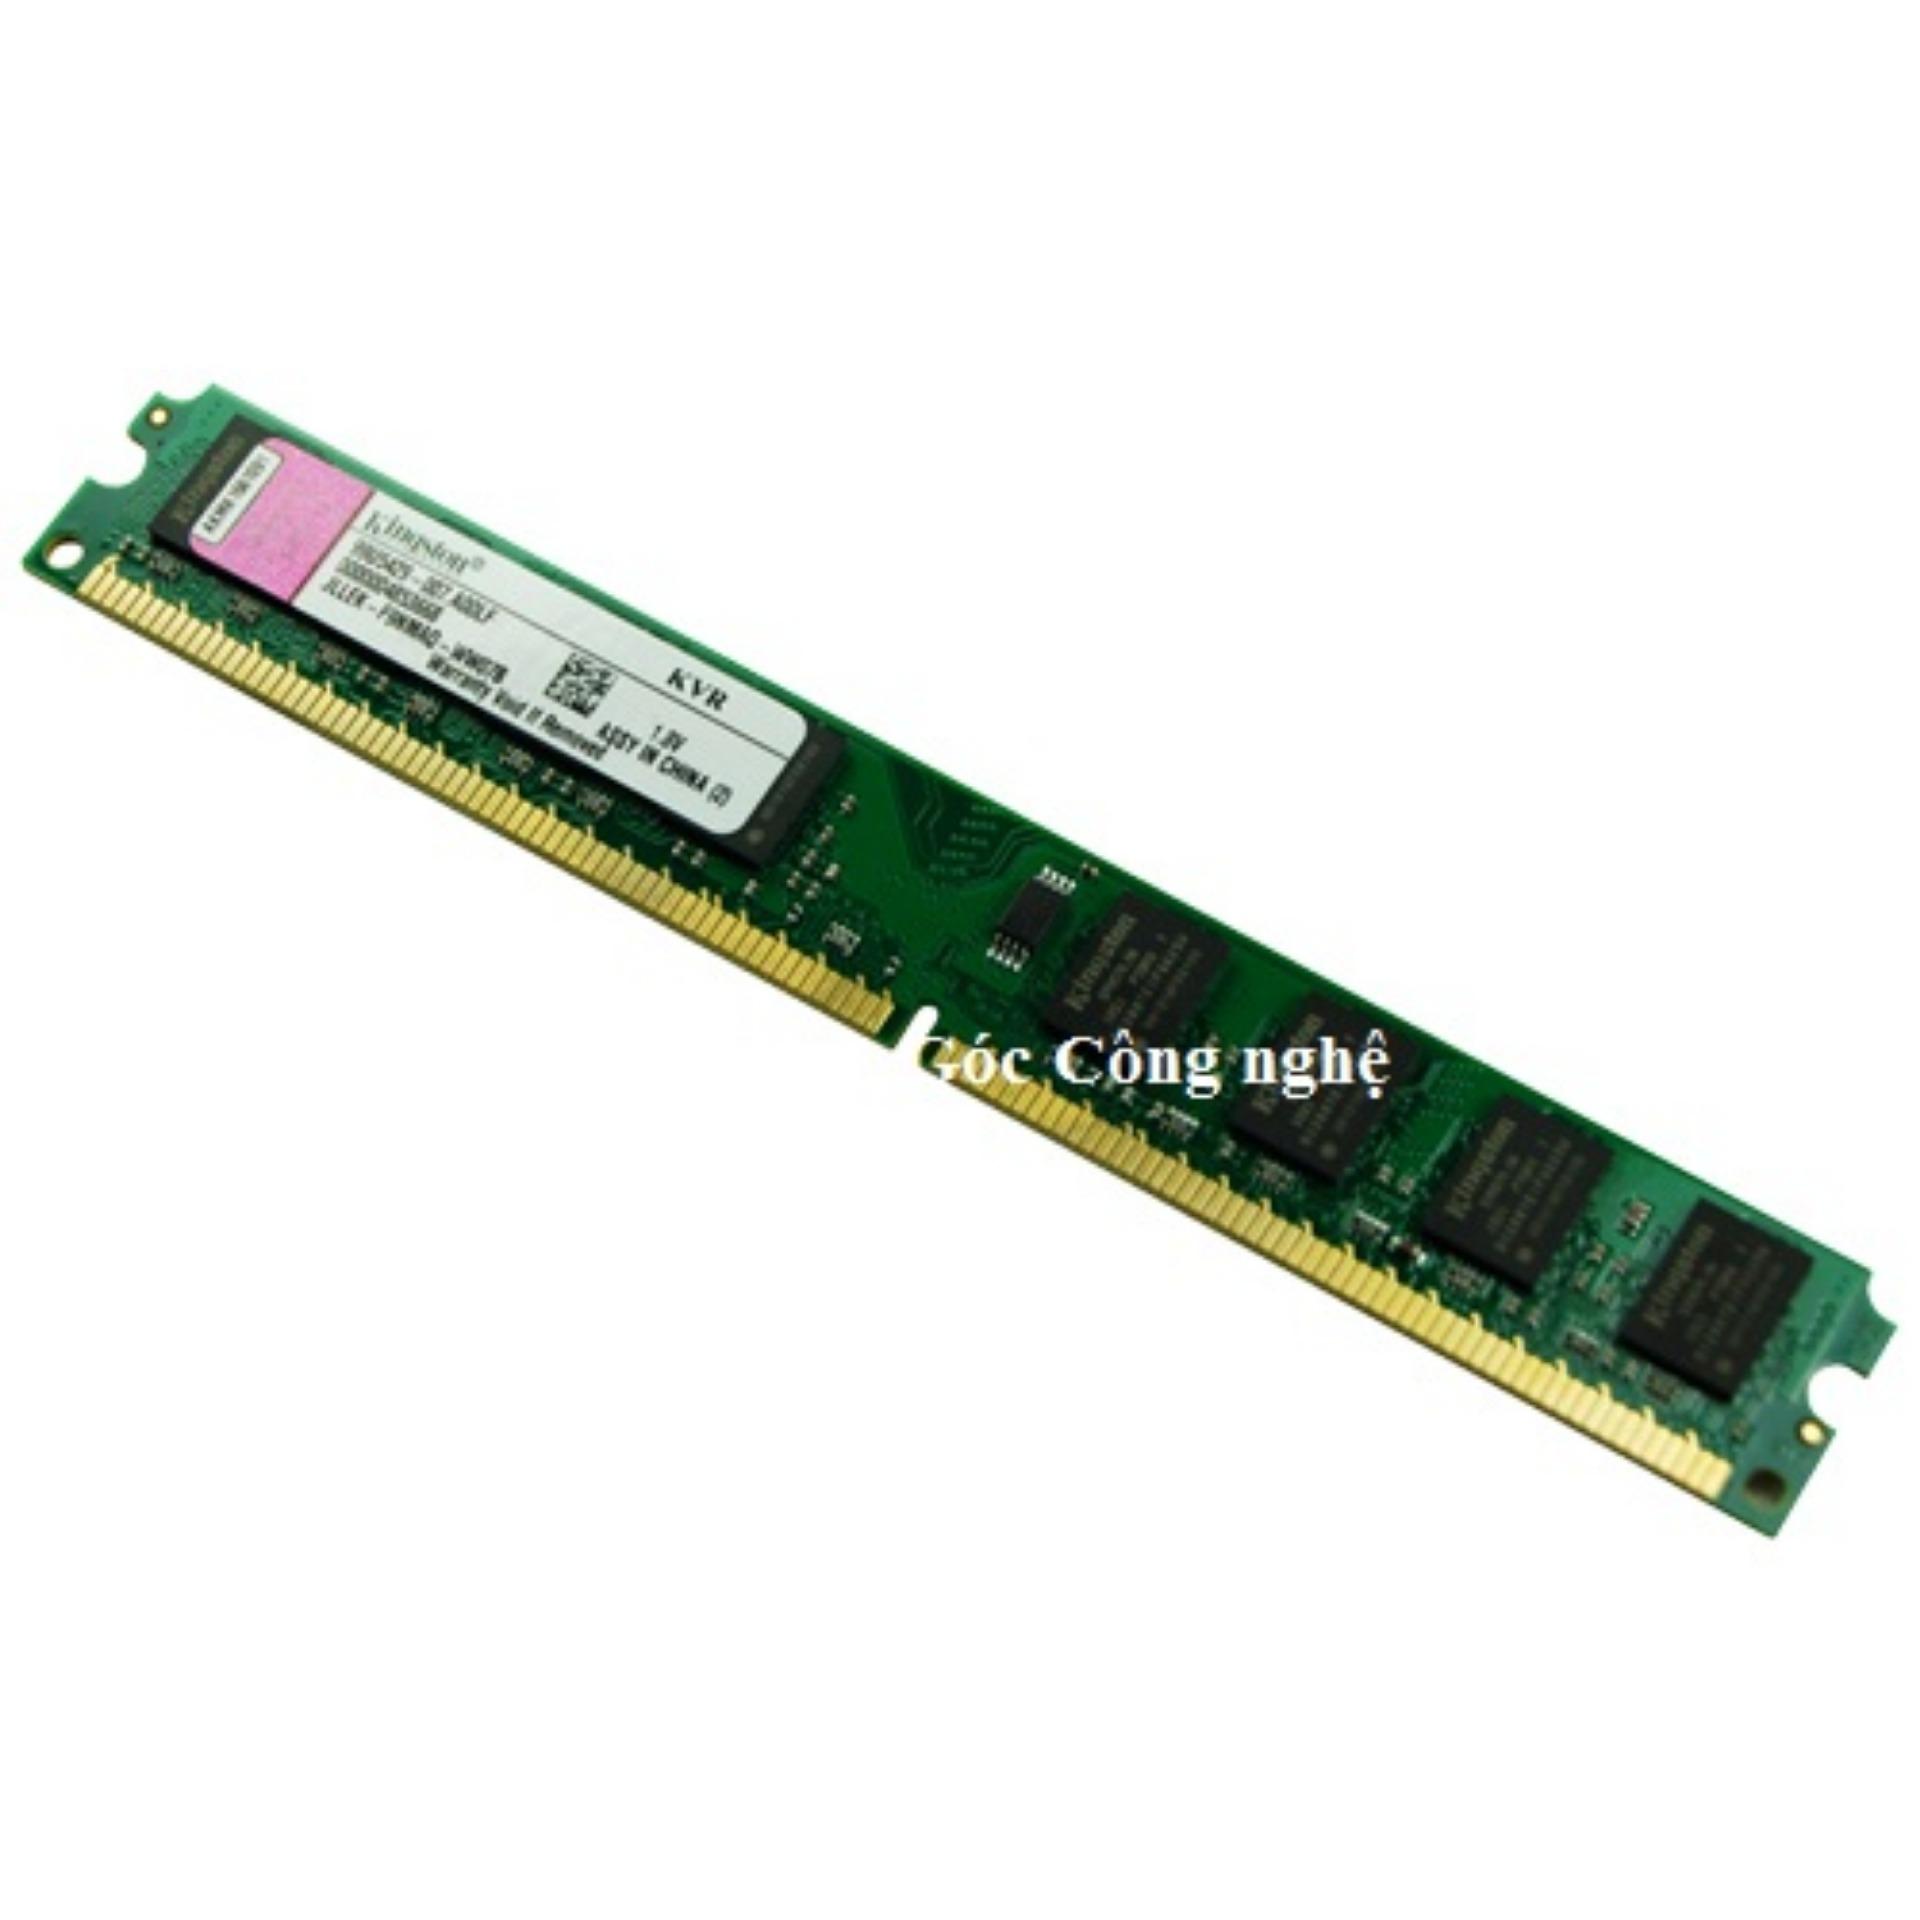 RAM Máy tính để bàn DDR2 2GB Bus 800Mhz (Xanh lá)